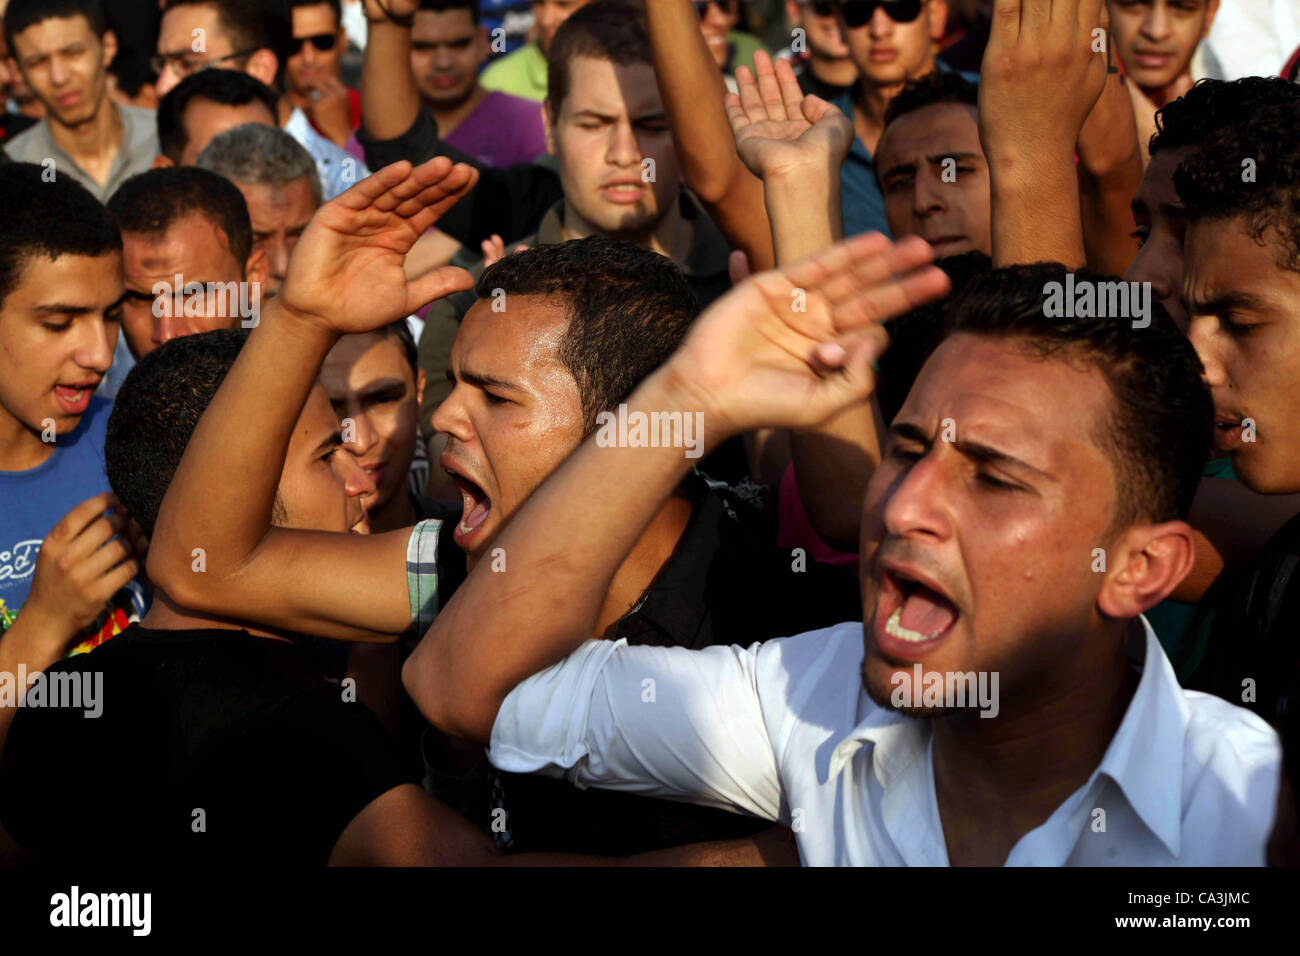 1 giugno 2012 - Il Cairo, il Cairo, Egitto - i dimostranti egiziani chant slogan contro egiziano candidato presidenziale Ahmed Shafiq in piazza Tahrir condannare il risultato del primo turno di votazioni in egiziani di elezione presidenziale in Cairo, Egitto, venerdì 1 giugno, 2012. Diverse centinaia di manifestanti rallie Foto Stock